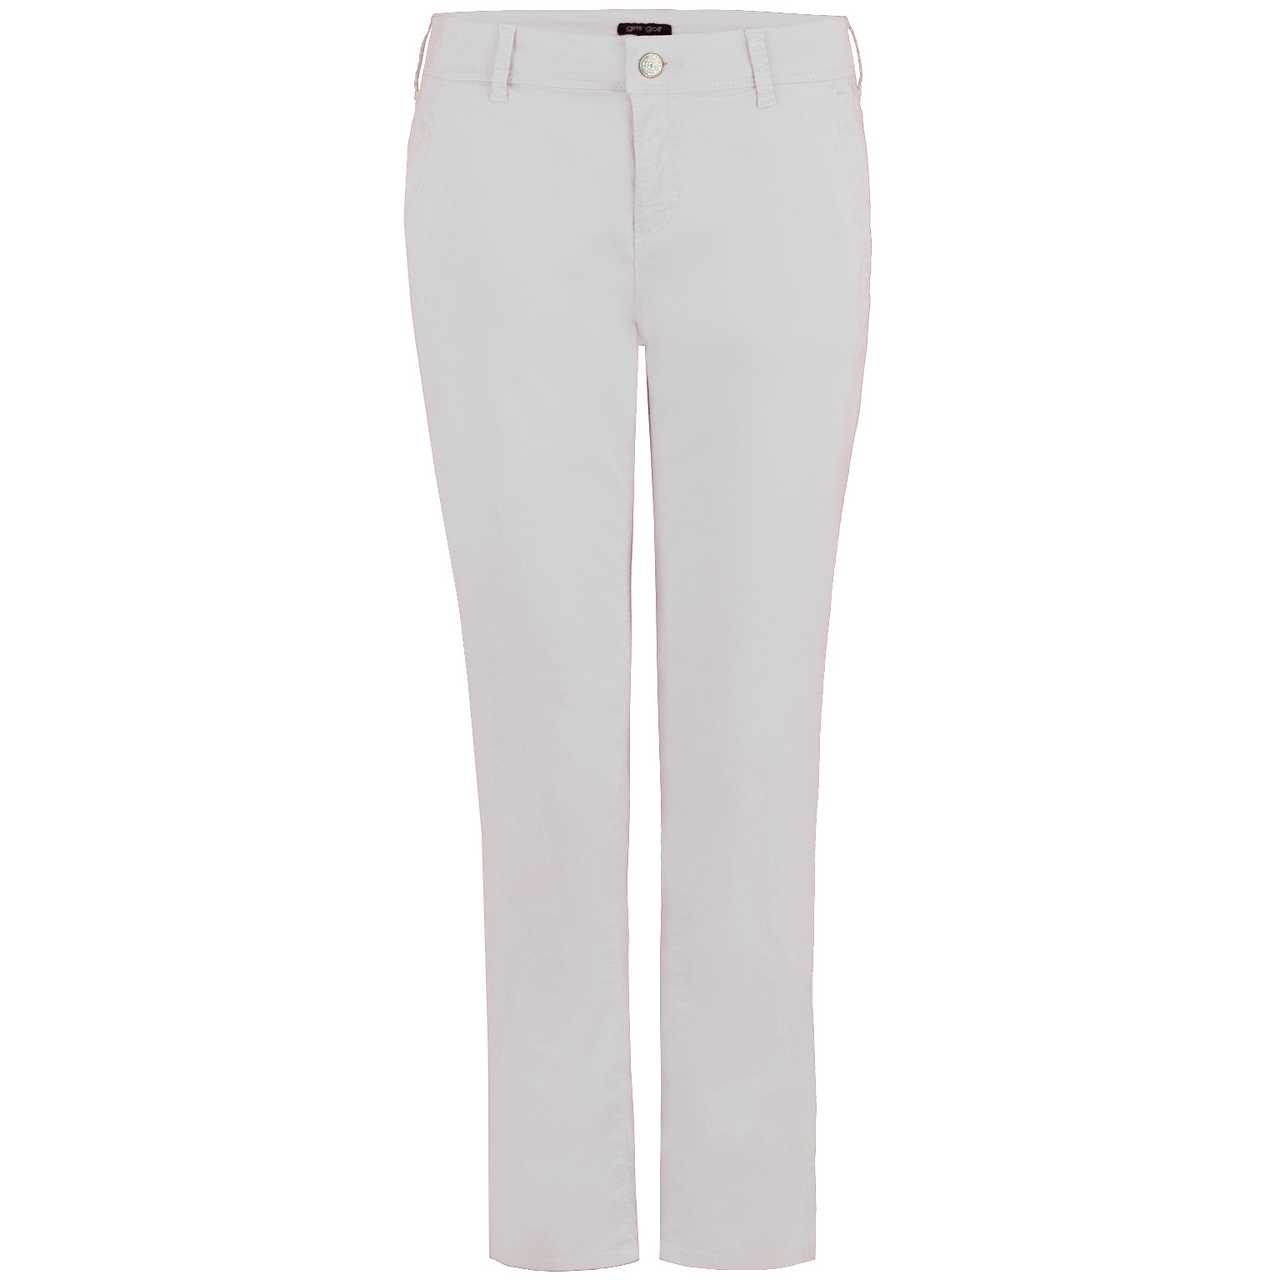 girls golf long pants 'EASY ELEGANCE' (white)